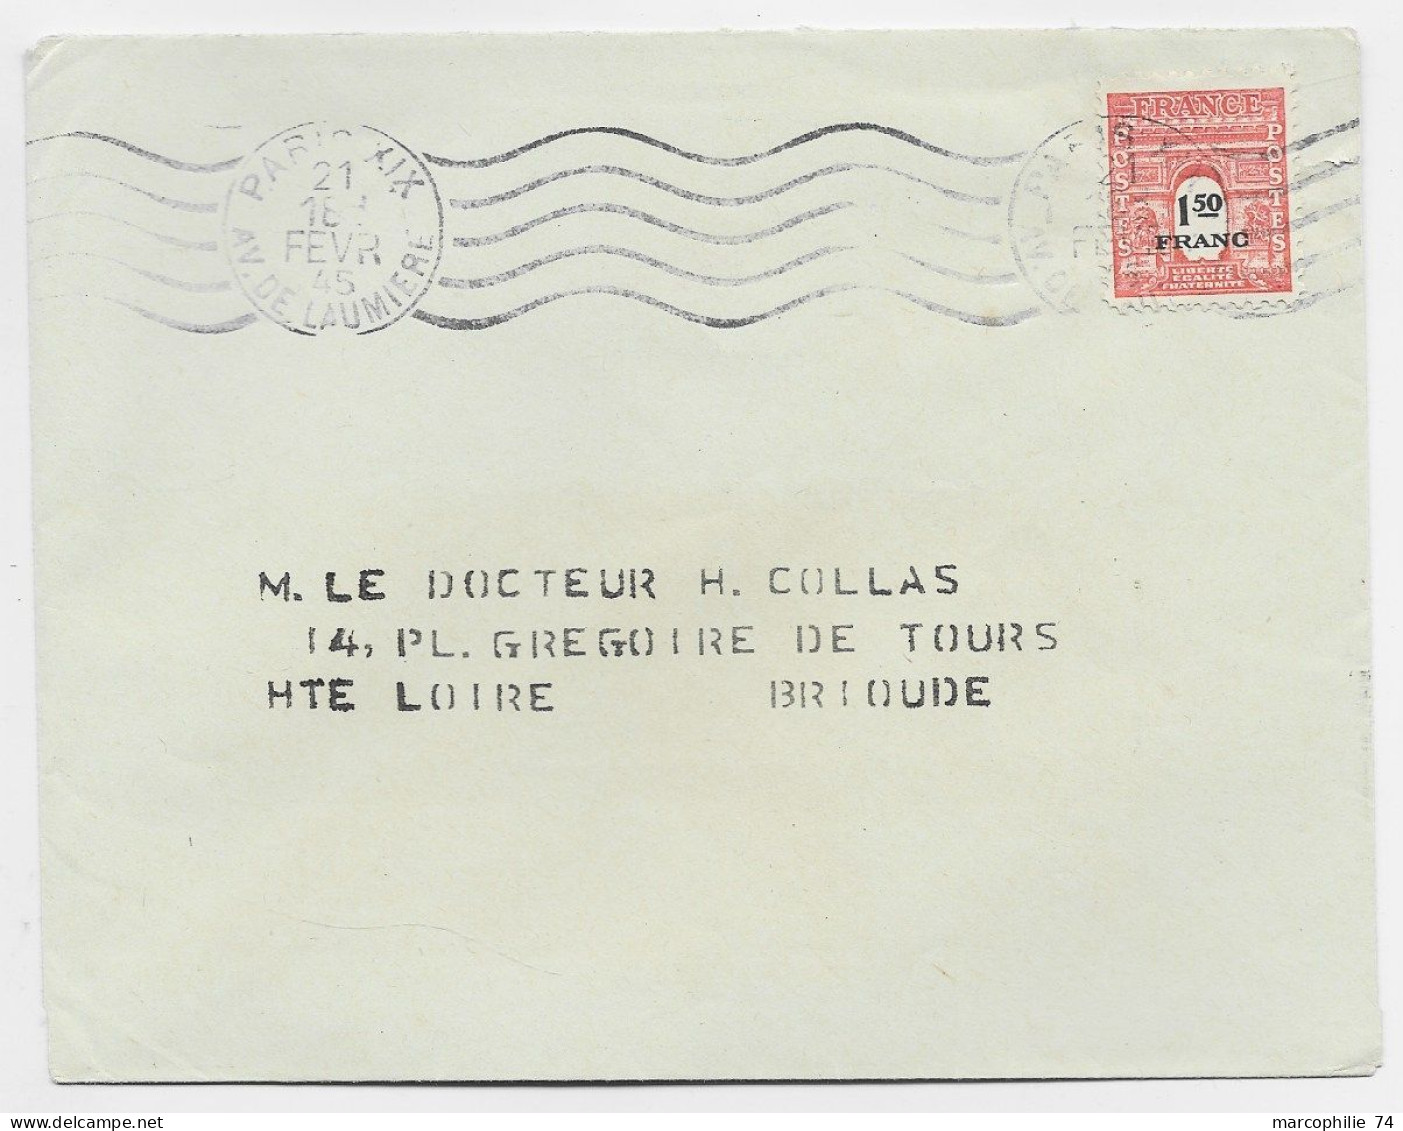 FRANCE ARC TRIOMPHE 1FR50 SEUL LETTRE MEC PARIS XII 21 FEVR 1945 USAGE COURT 17 JOURS - 1944-45 Arc De Triomphe